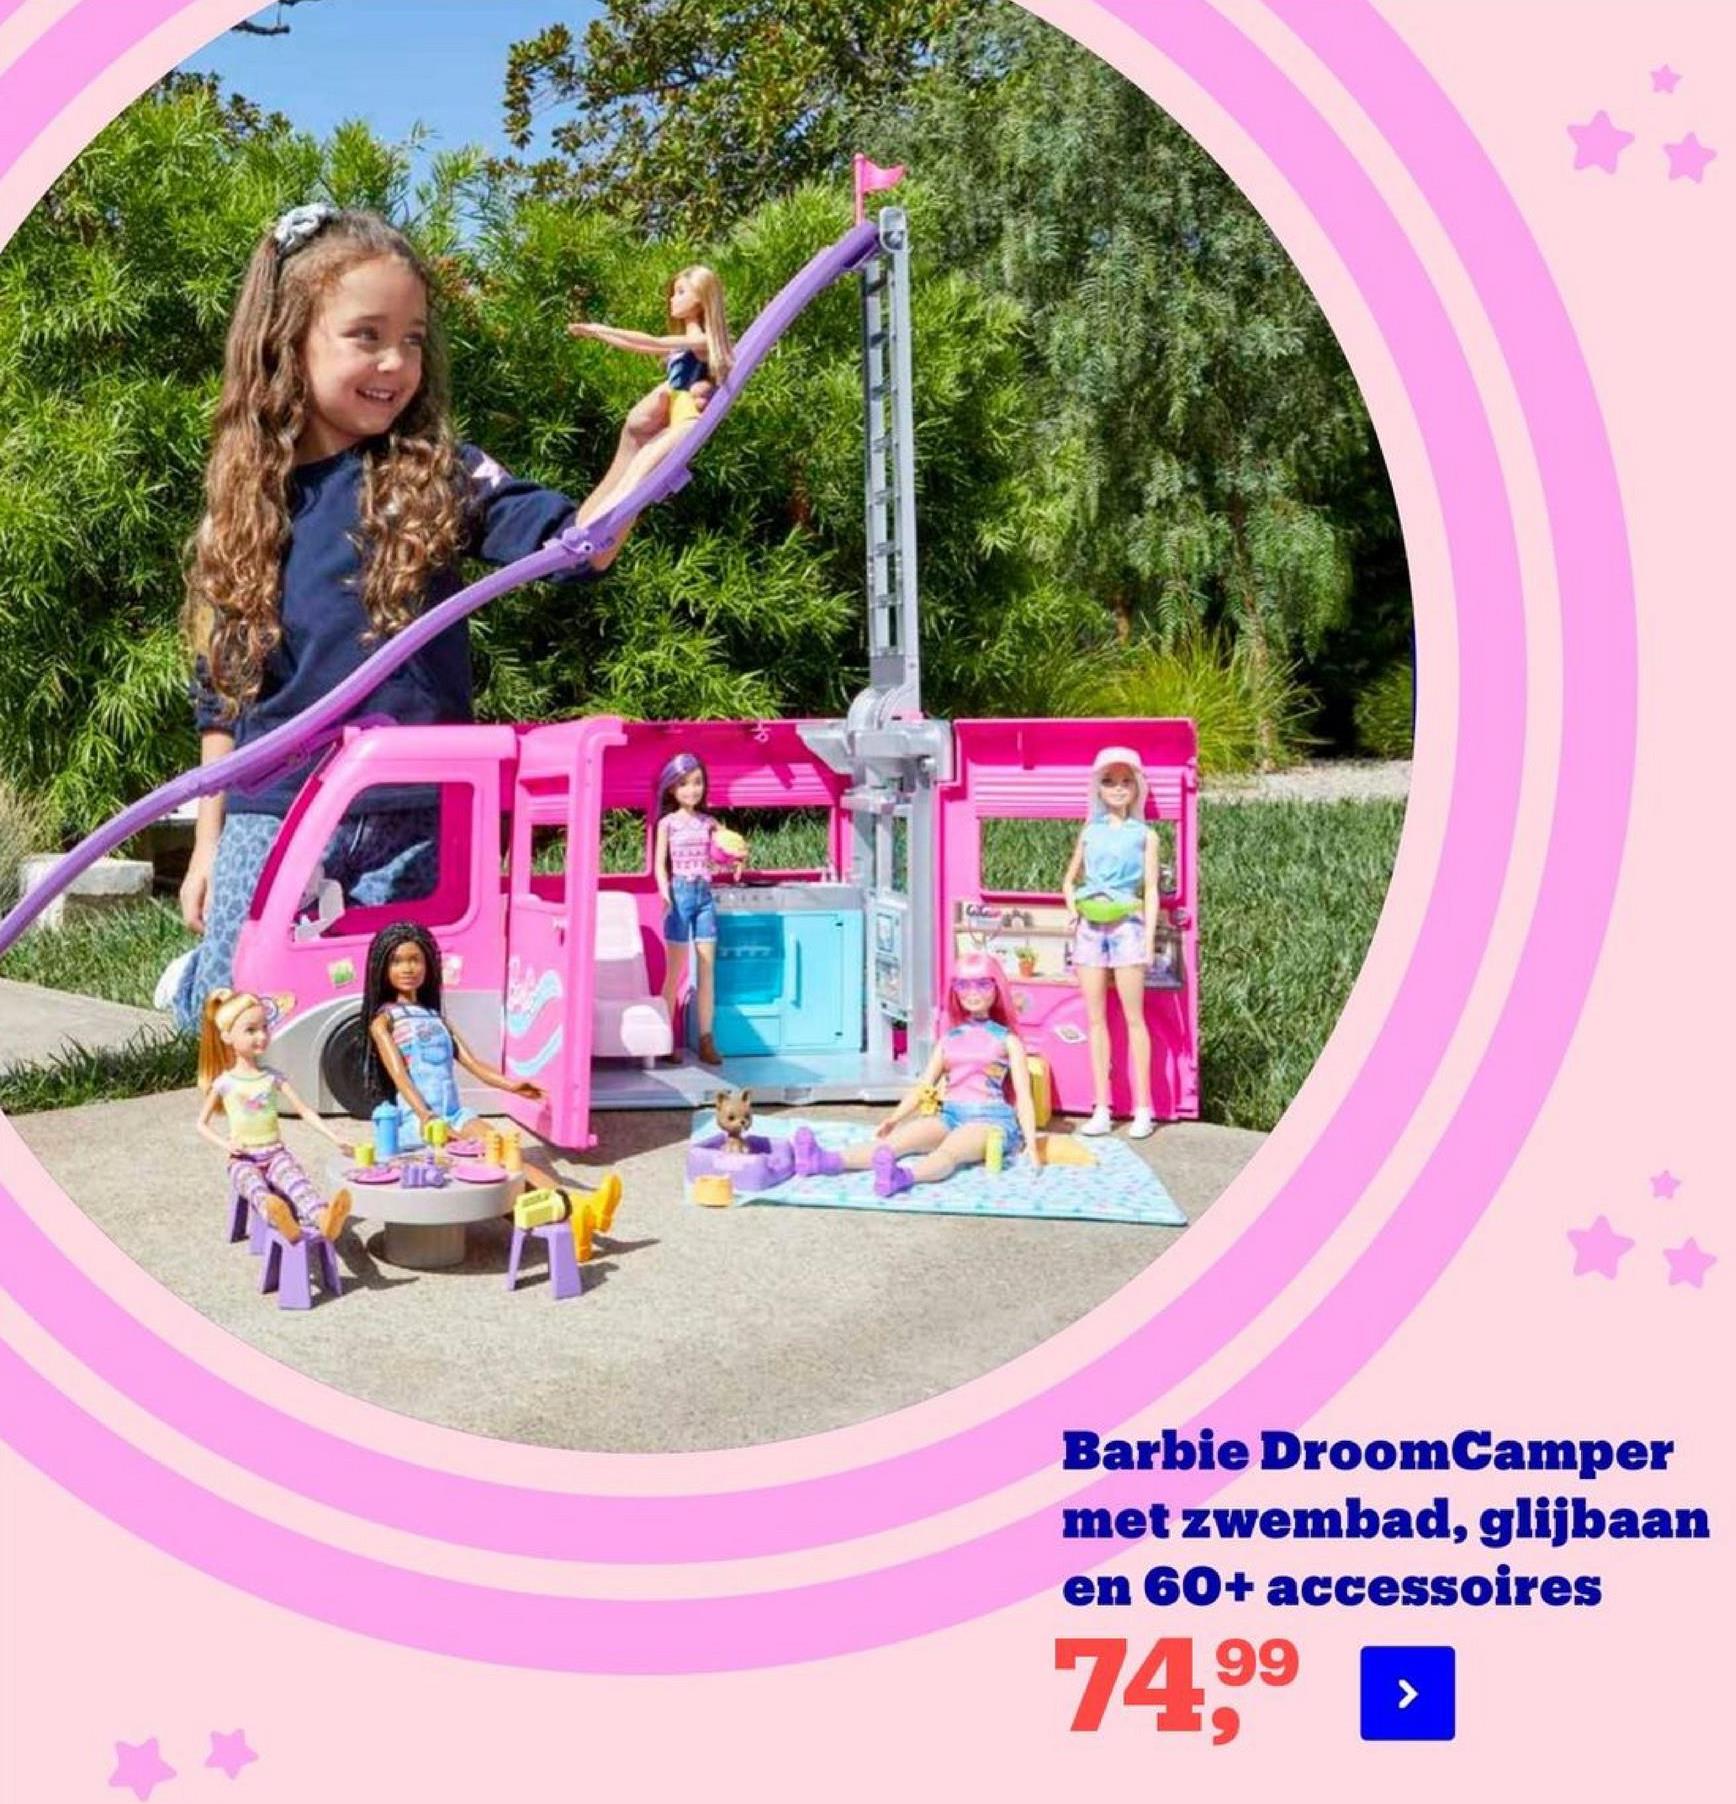 Barbie DroomCamper
met zwembad, glijbaan
en 60+ accessoires
74,99
*
